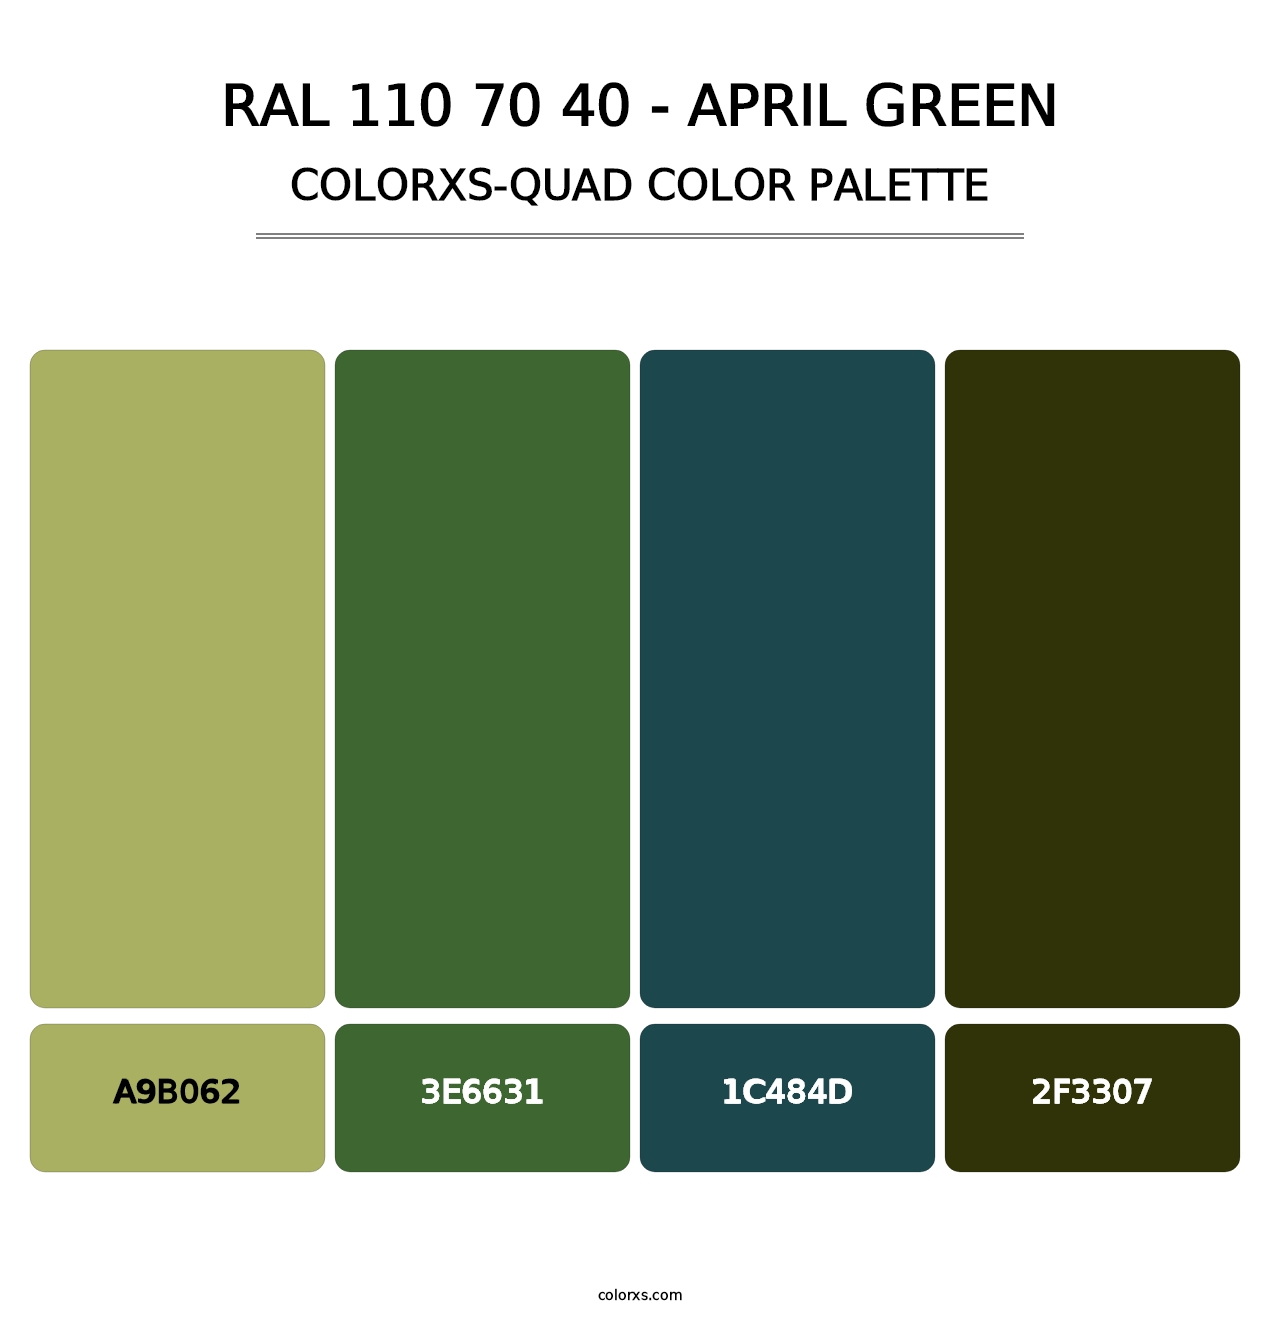 RAL 110 70 40 - April Green - Colorxs Quad Palette